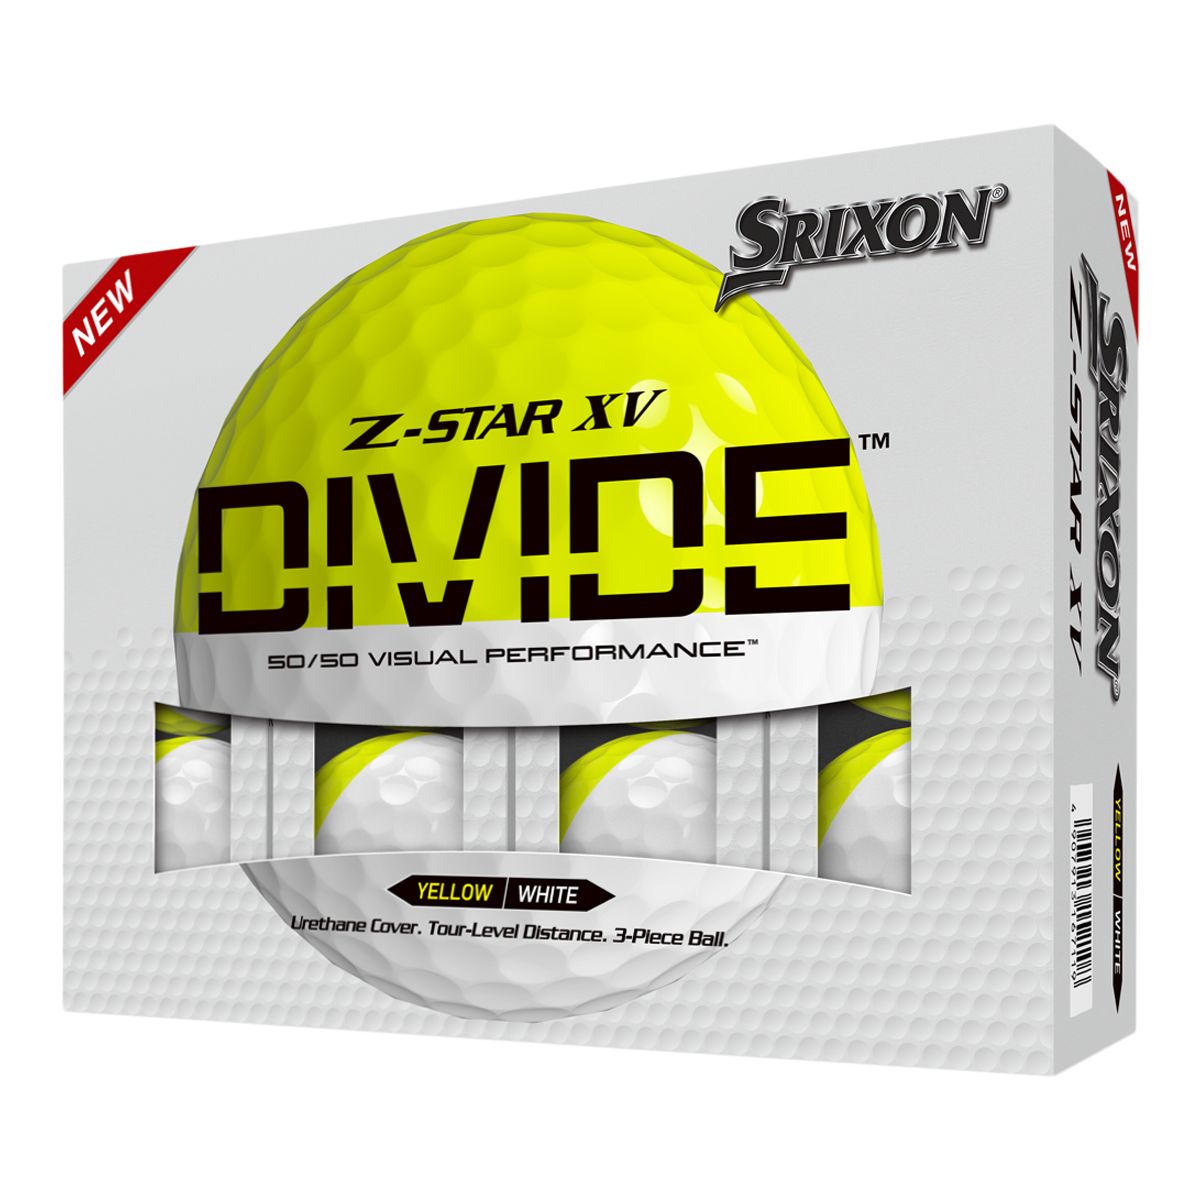 Srixon Men's Z-Star XV8 Divide Golf Balls - 12 Pack